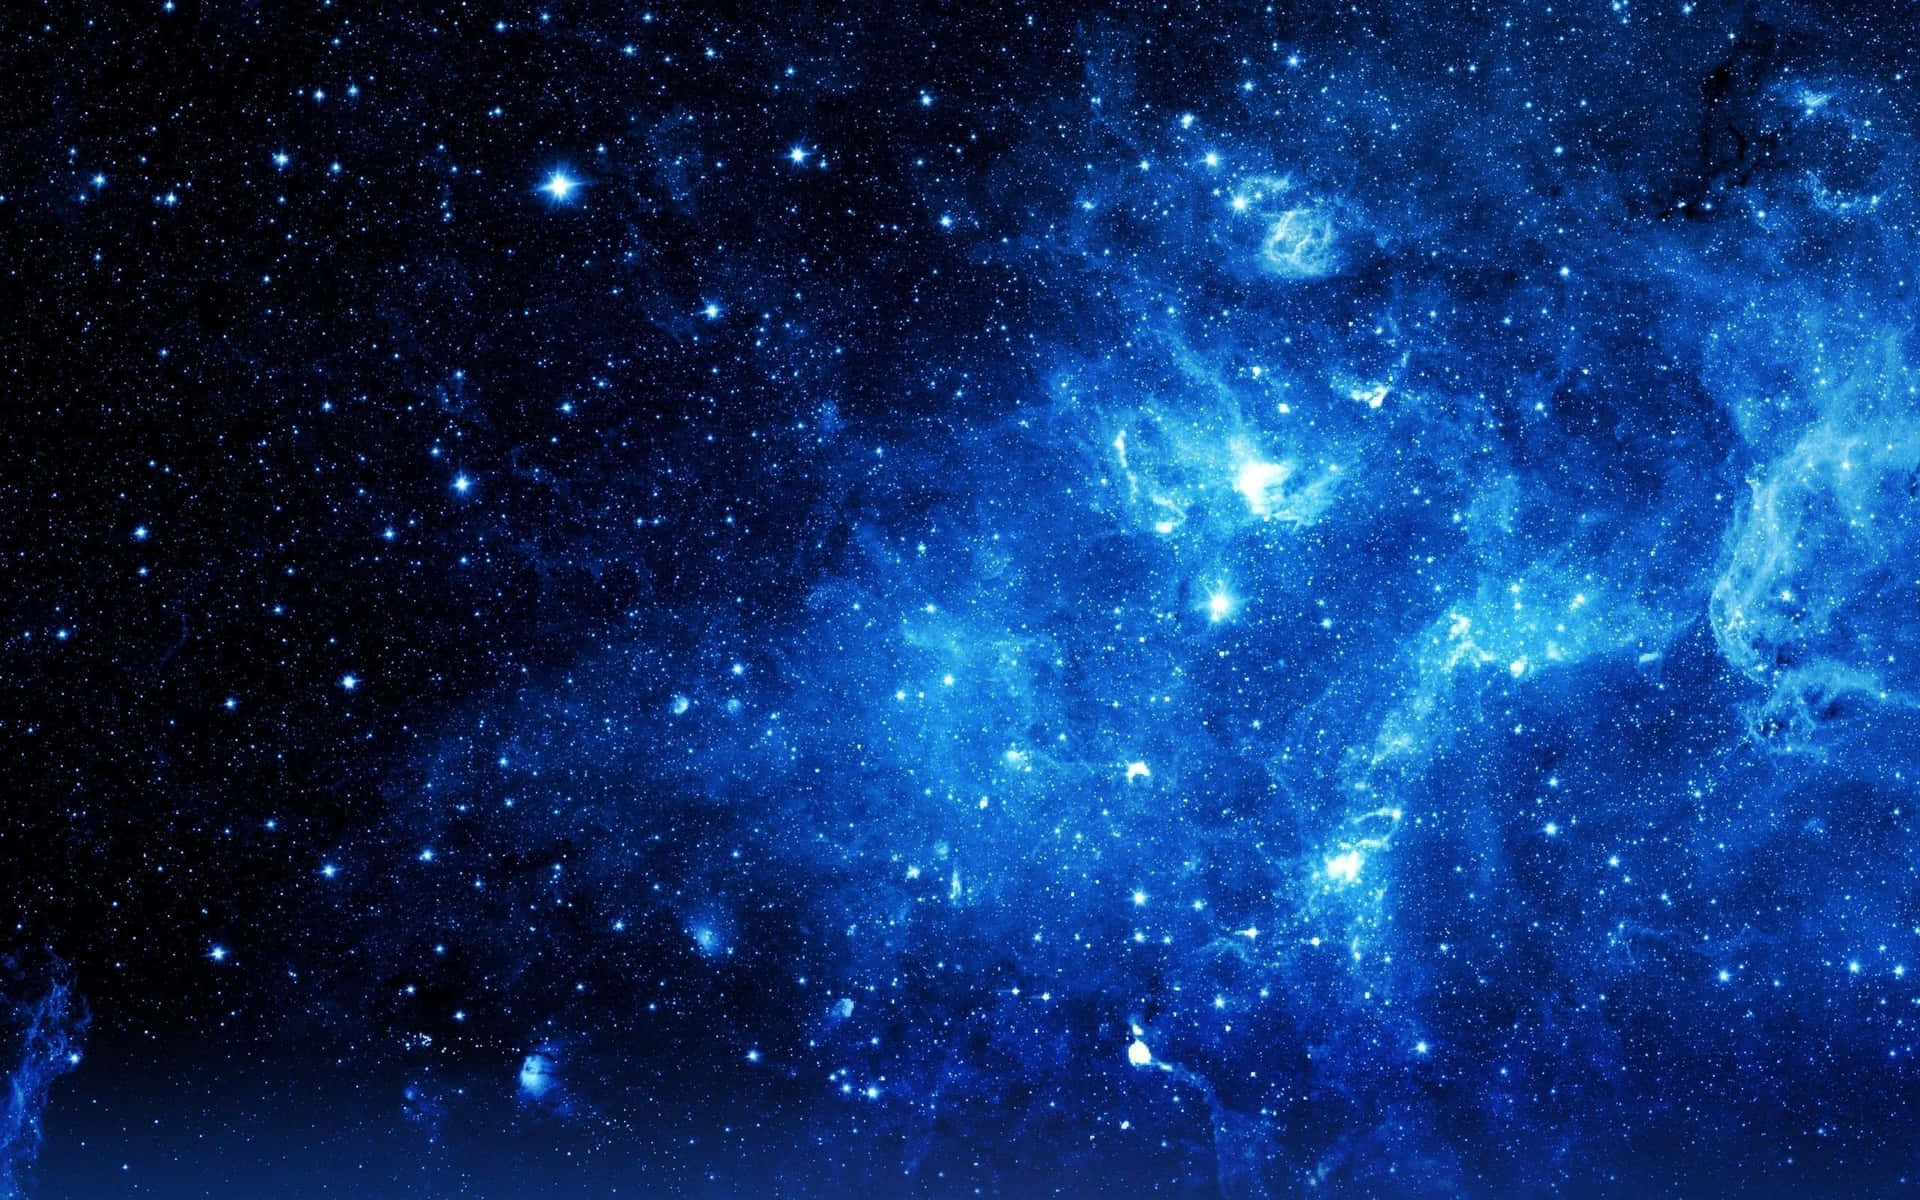 Dyk ned i det kolde blå fra dette imponerende galakse. Wallpaper